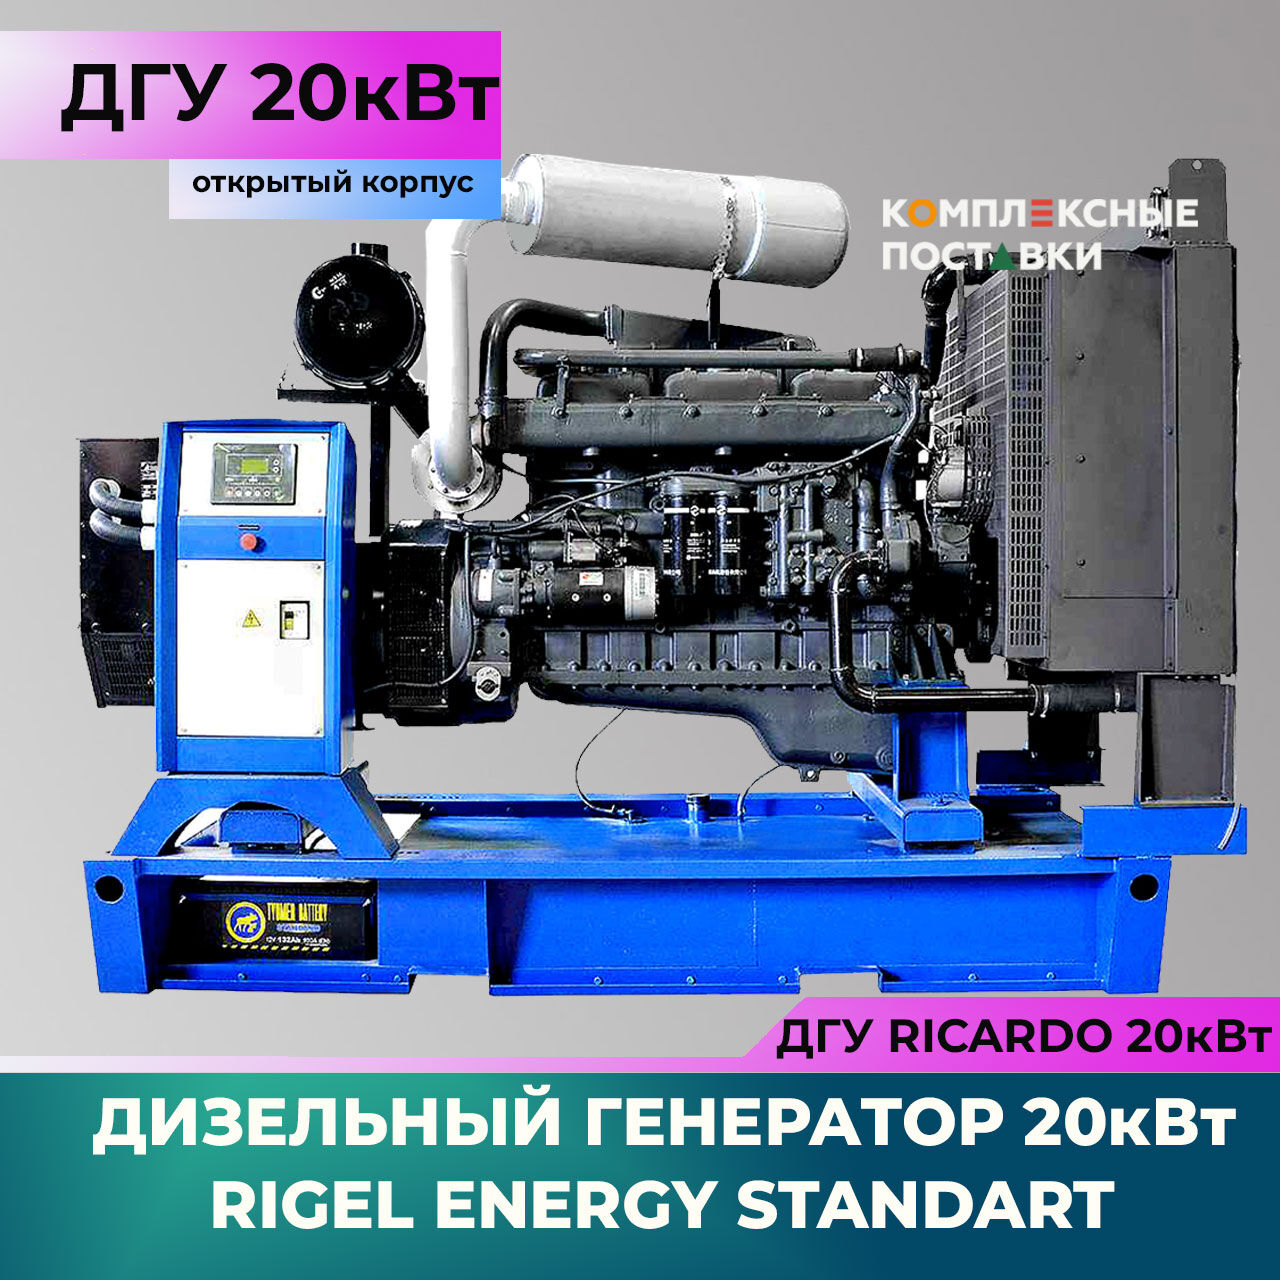 ДГУ 20 кВт Ricardo R Дизельный генератор Rigel Energy Standard RES 20 (20 кВт, Ricardo R) открытый корпус